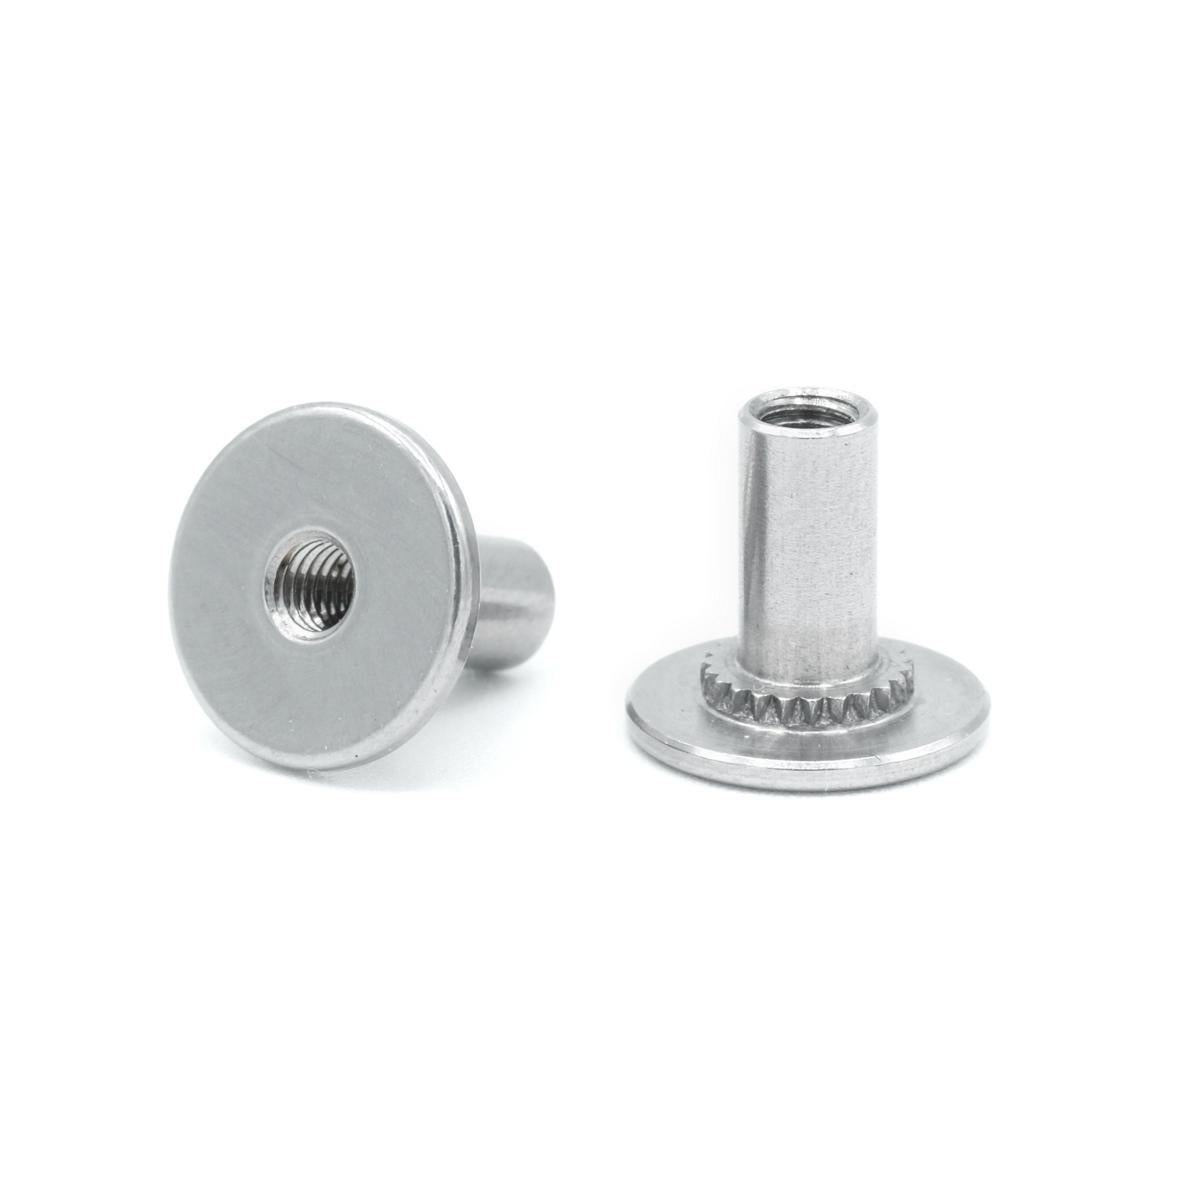 Spare screws (1 pair)